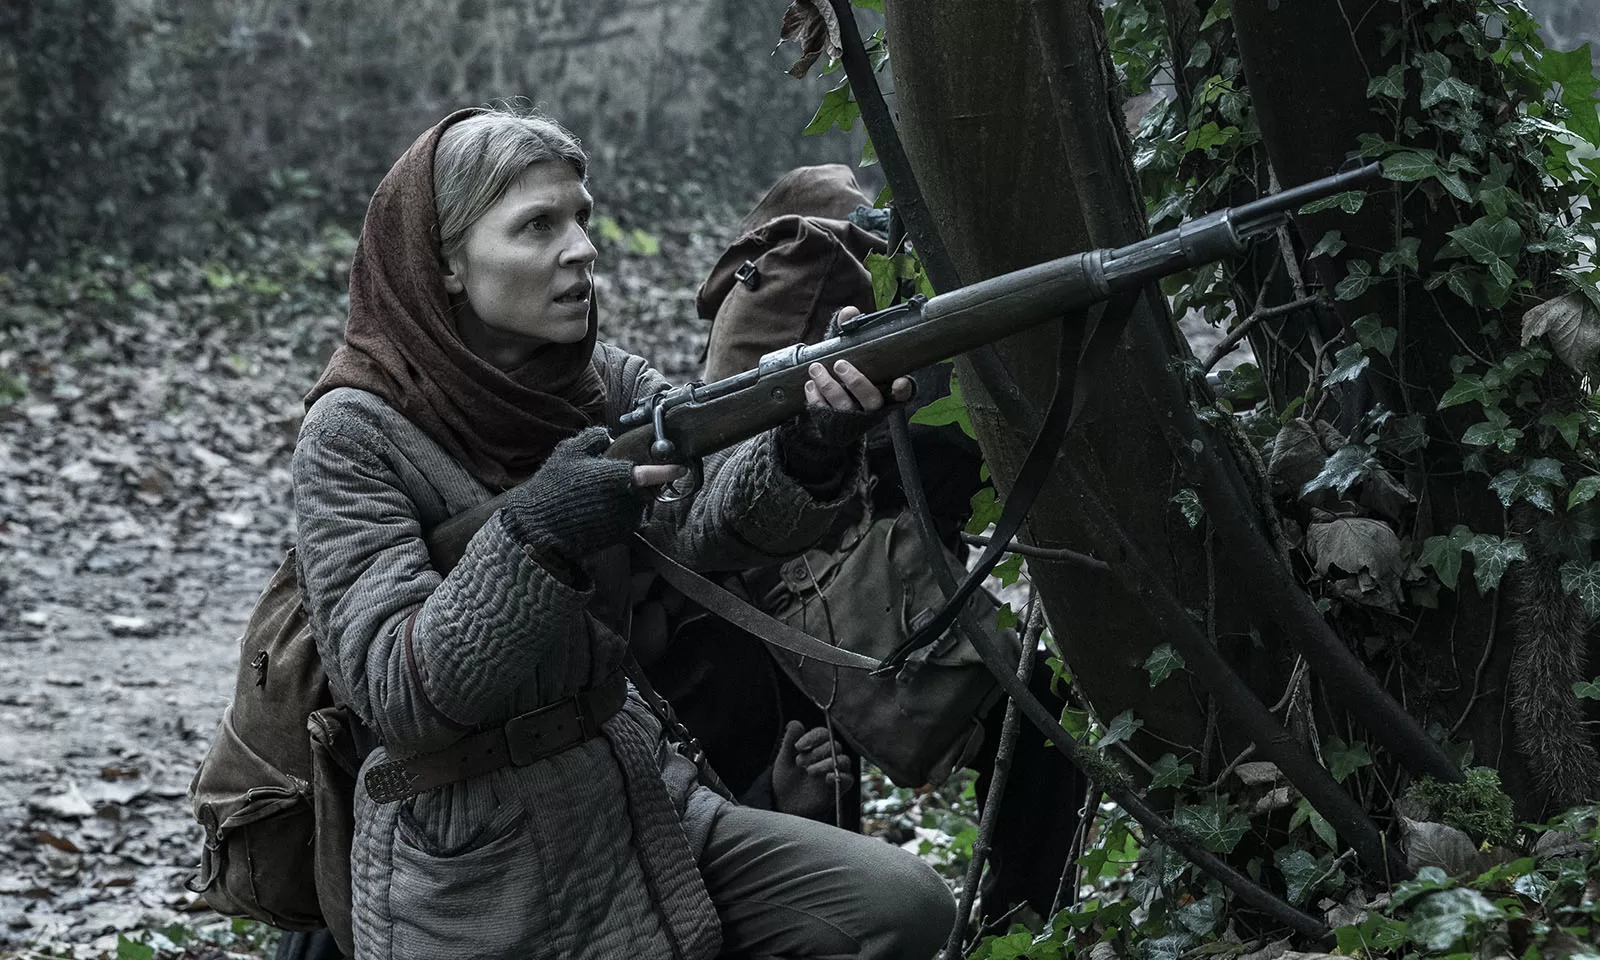 Isabelle apontando sua arma na floresta em cena do Episódio 2 da 1ª temporada de The Walking Dead: Daryl Dixon.